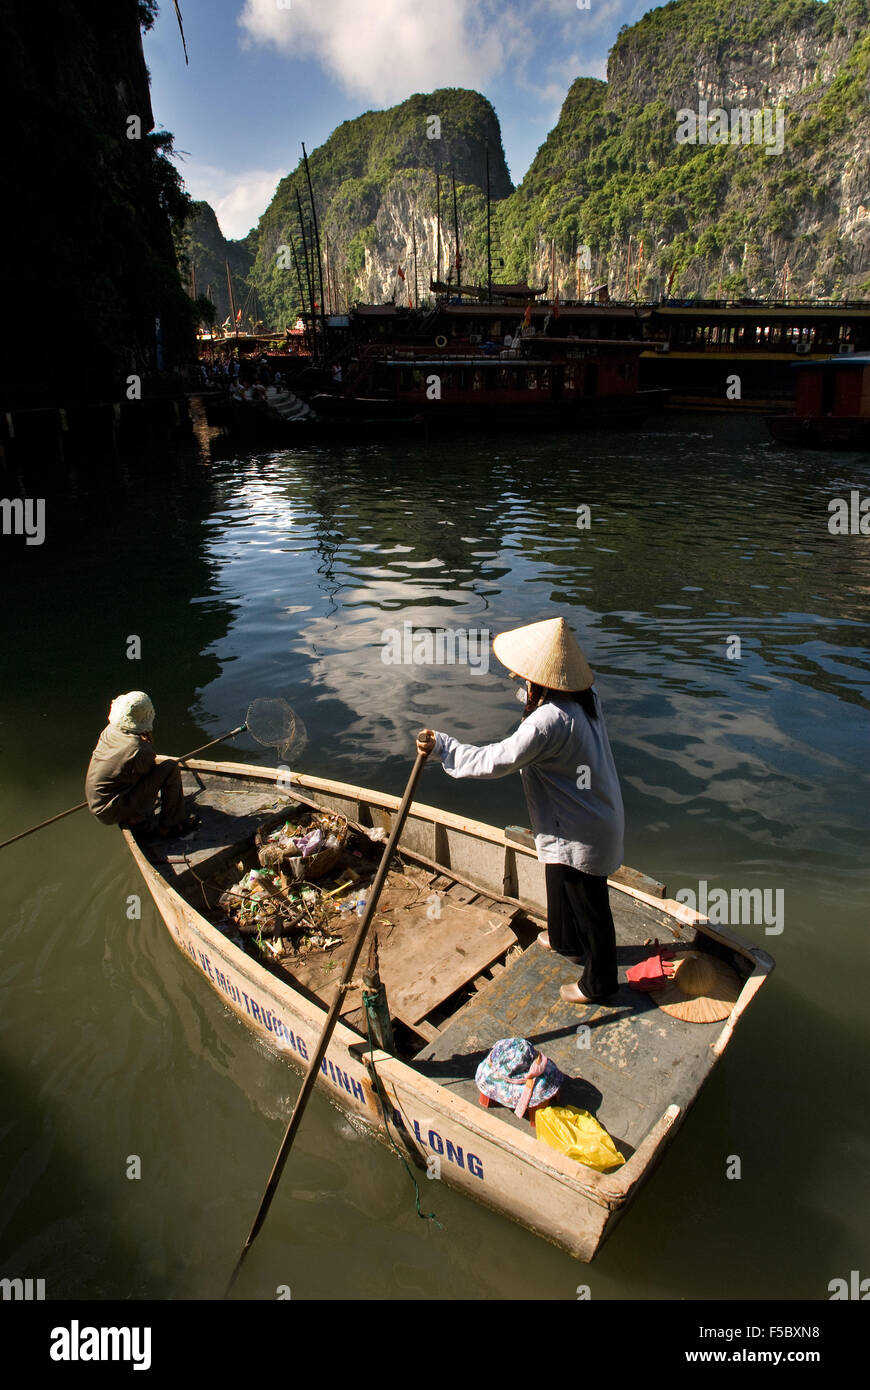 Mujer remando un bote, recogiendo la basura de los barcos turísticos, la Bahía de Halong, Viet Nam. Remando un bote por la bahía de Halong, Vietnam. Cat. Foto de stock